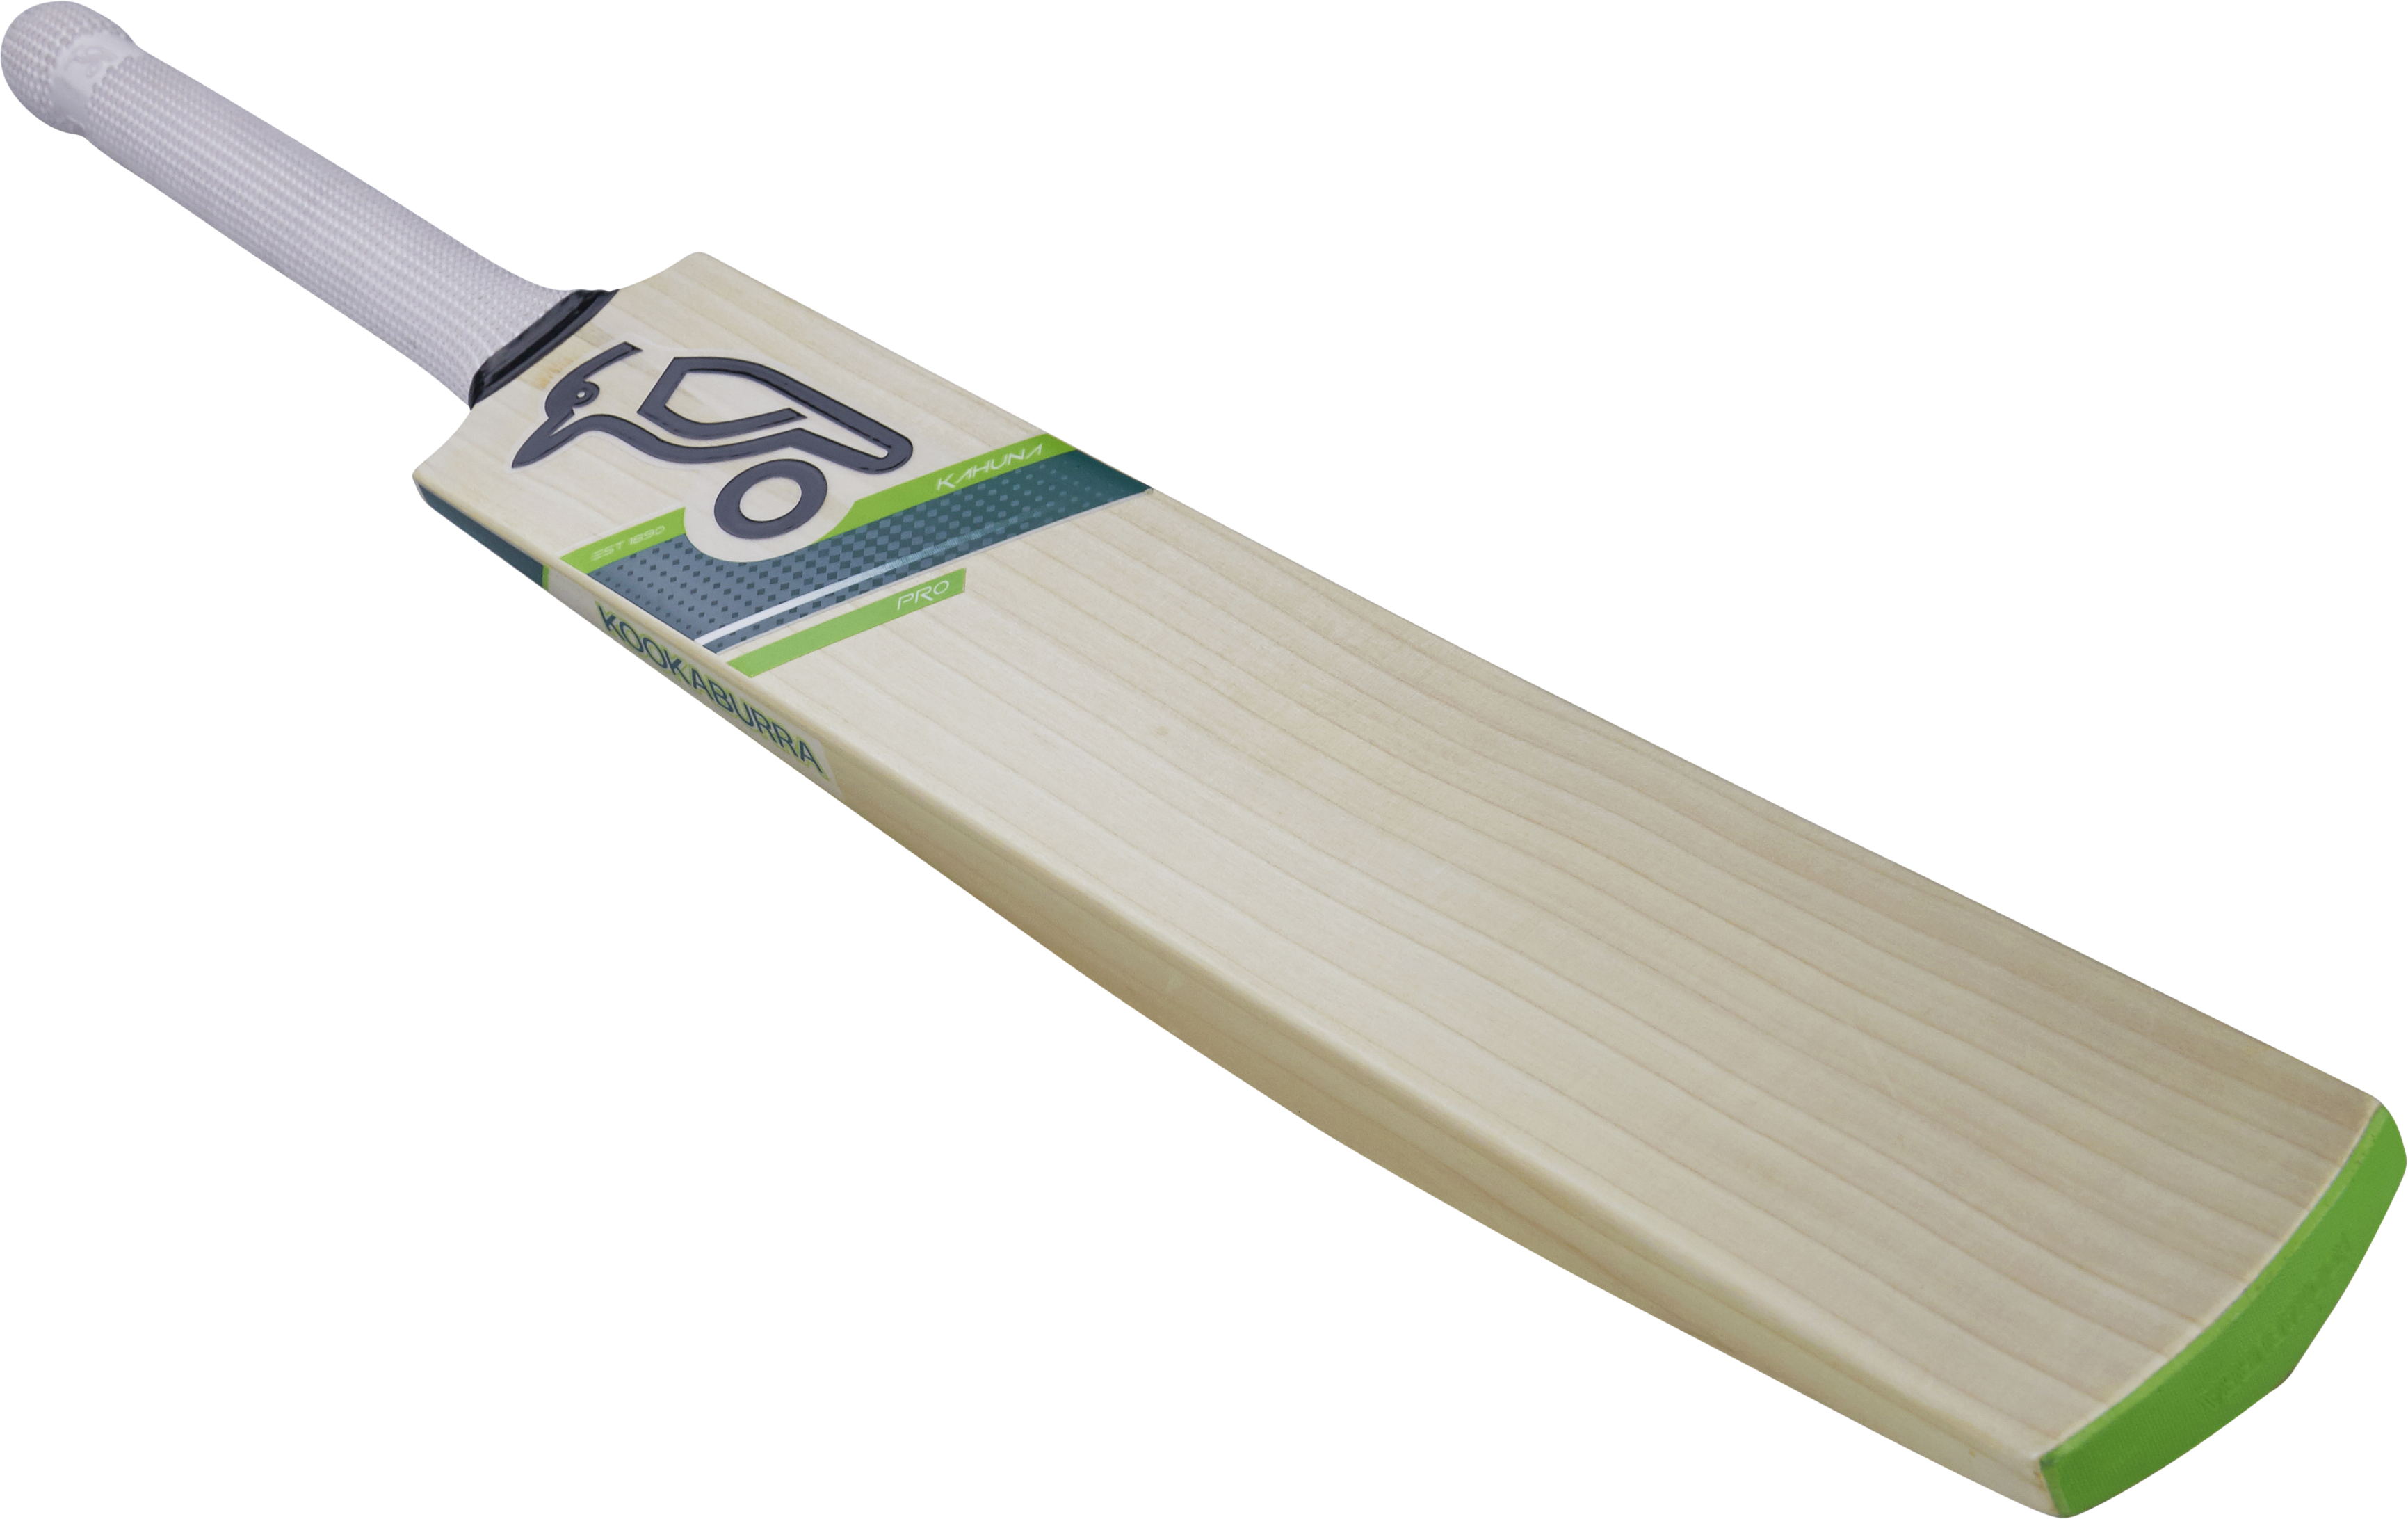 Kookaburra Kahuna cricket bat 2017